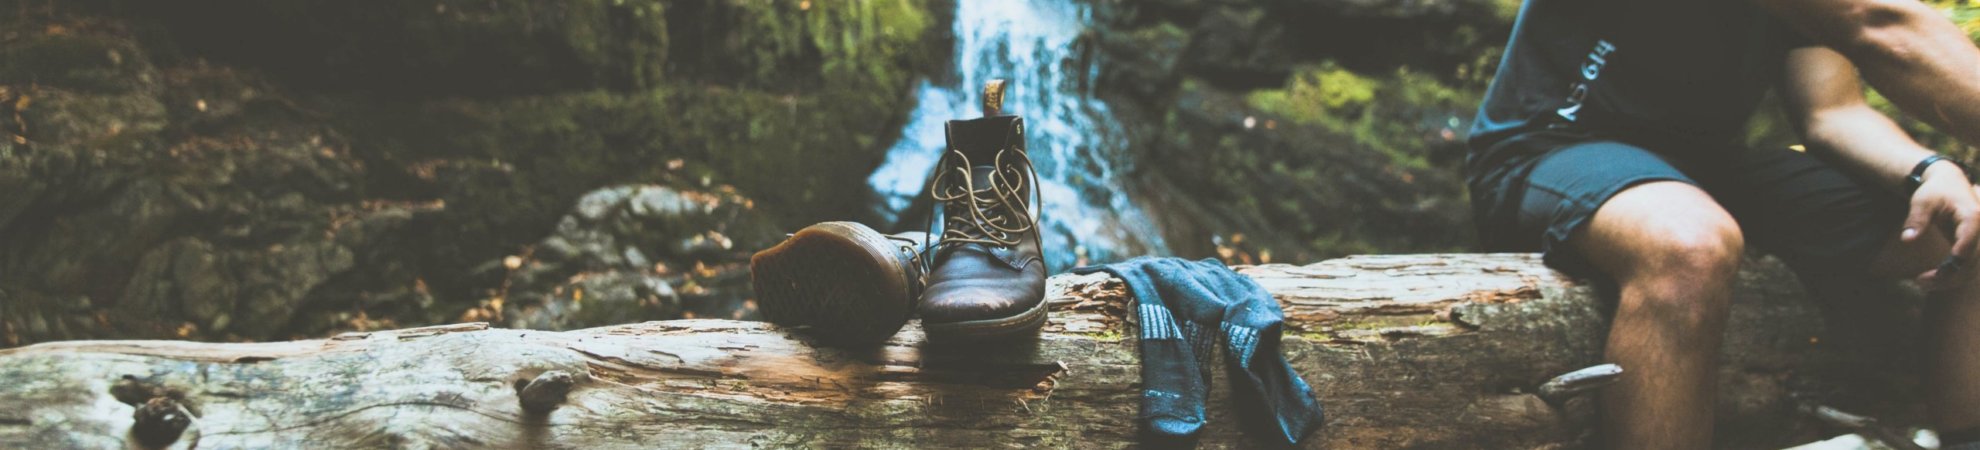 Lightweight hiking boots